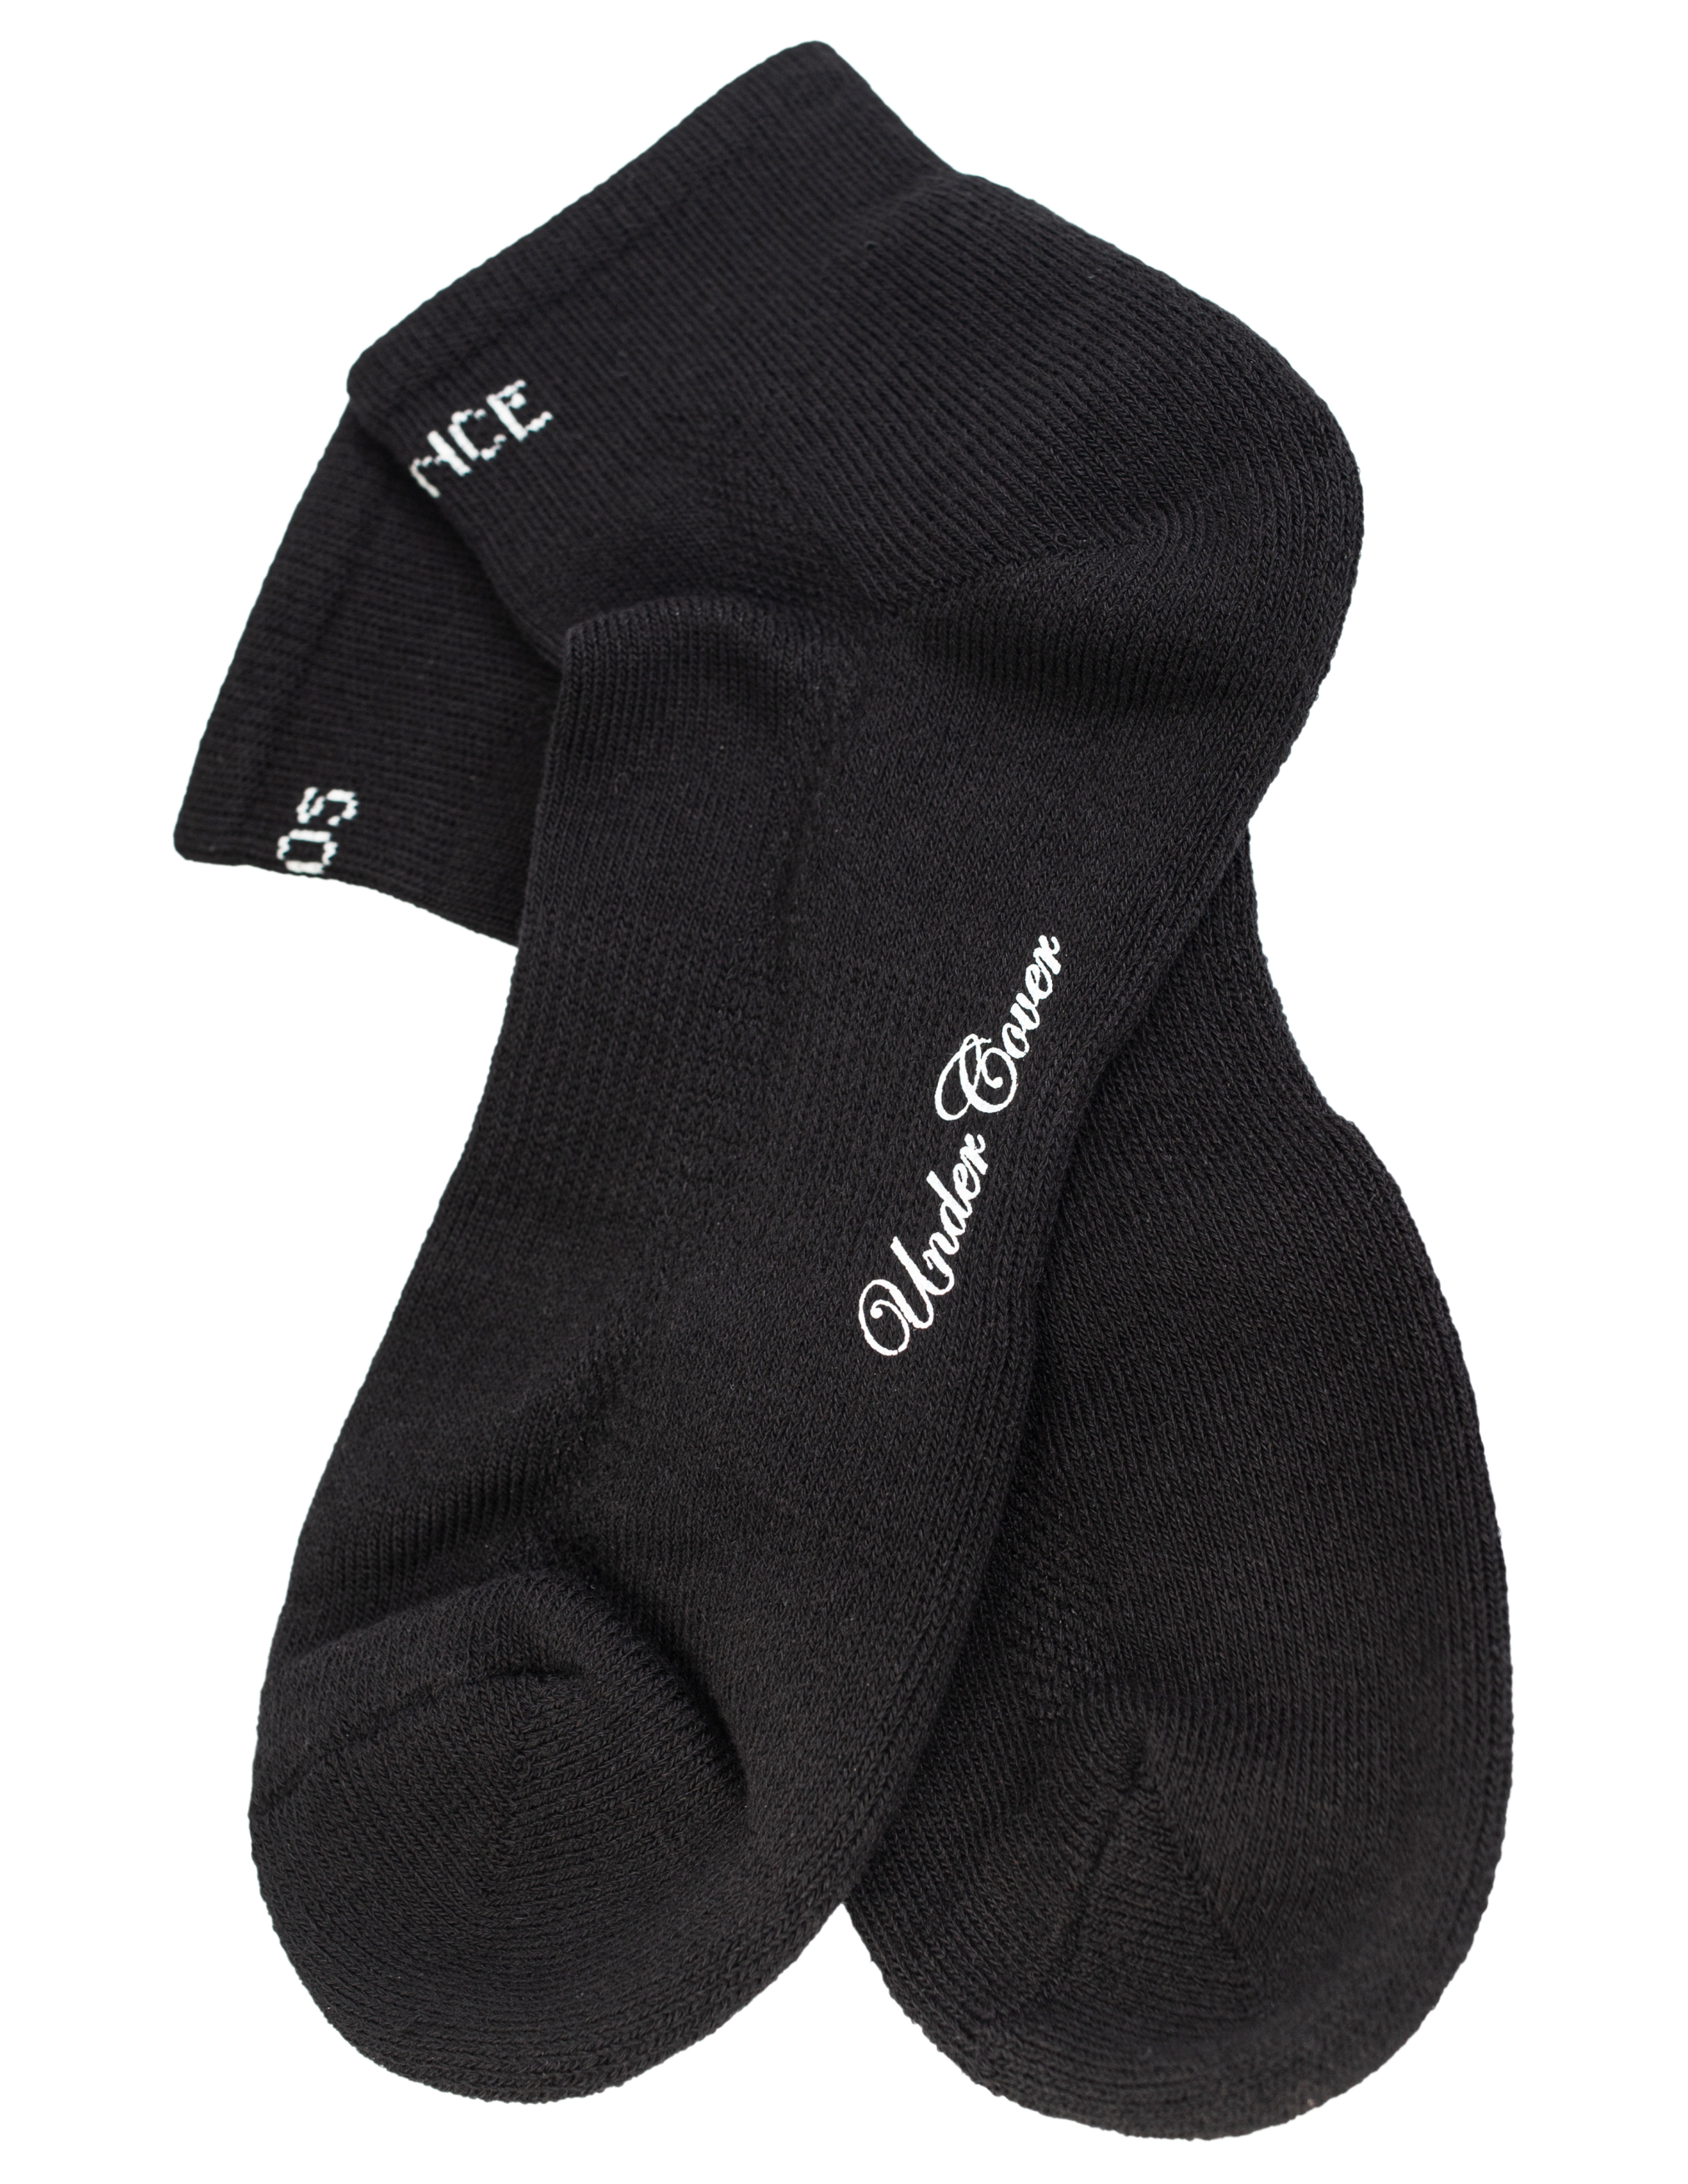 Черные носки Chaos Balance Undercover UC1B4L03/blk, размер One Size UC1B4L03/blk - фото 1